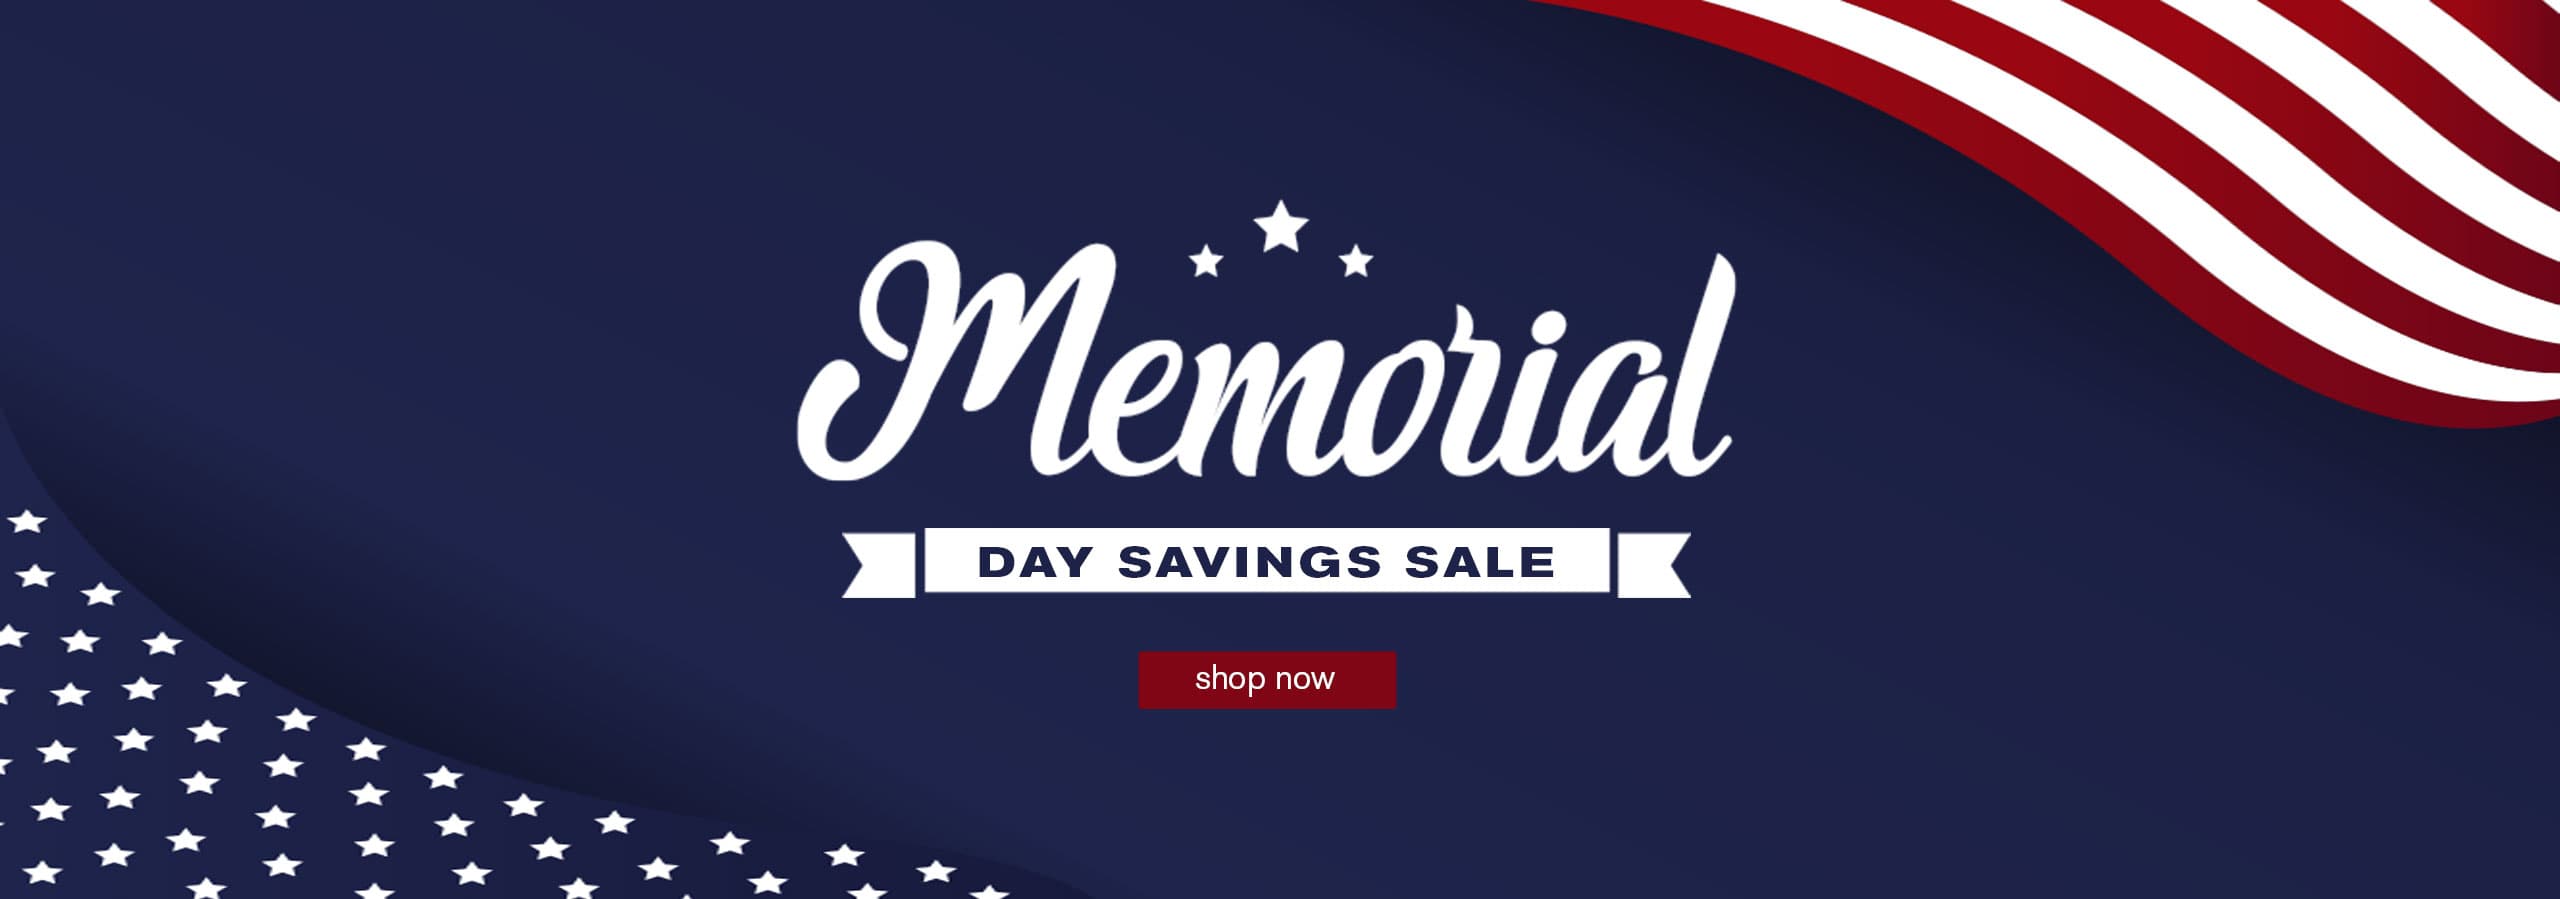 Memorial Day Savings Sale